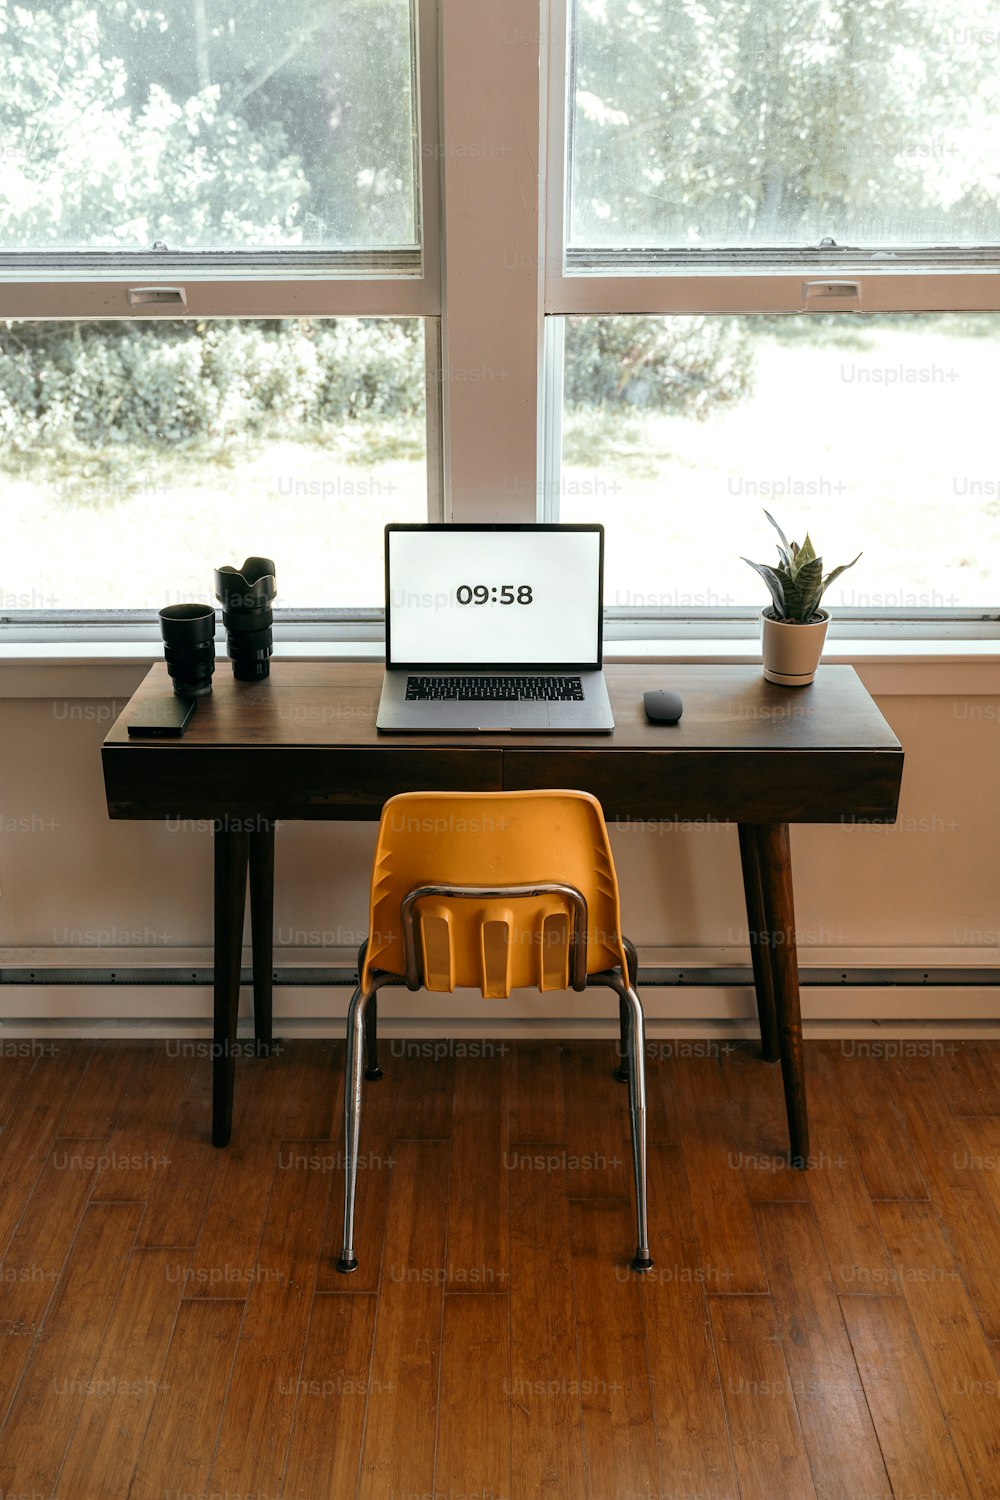 una computadora portátil sentada encima de un escritorio de madera